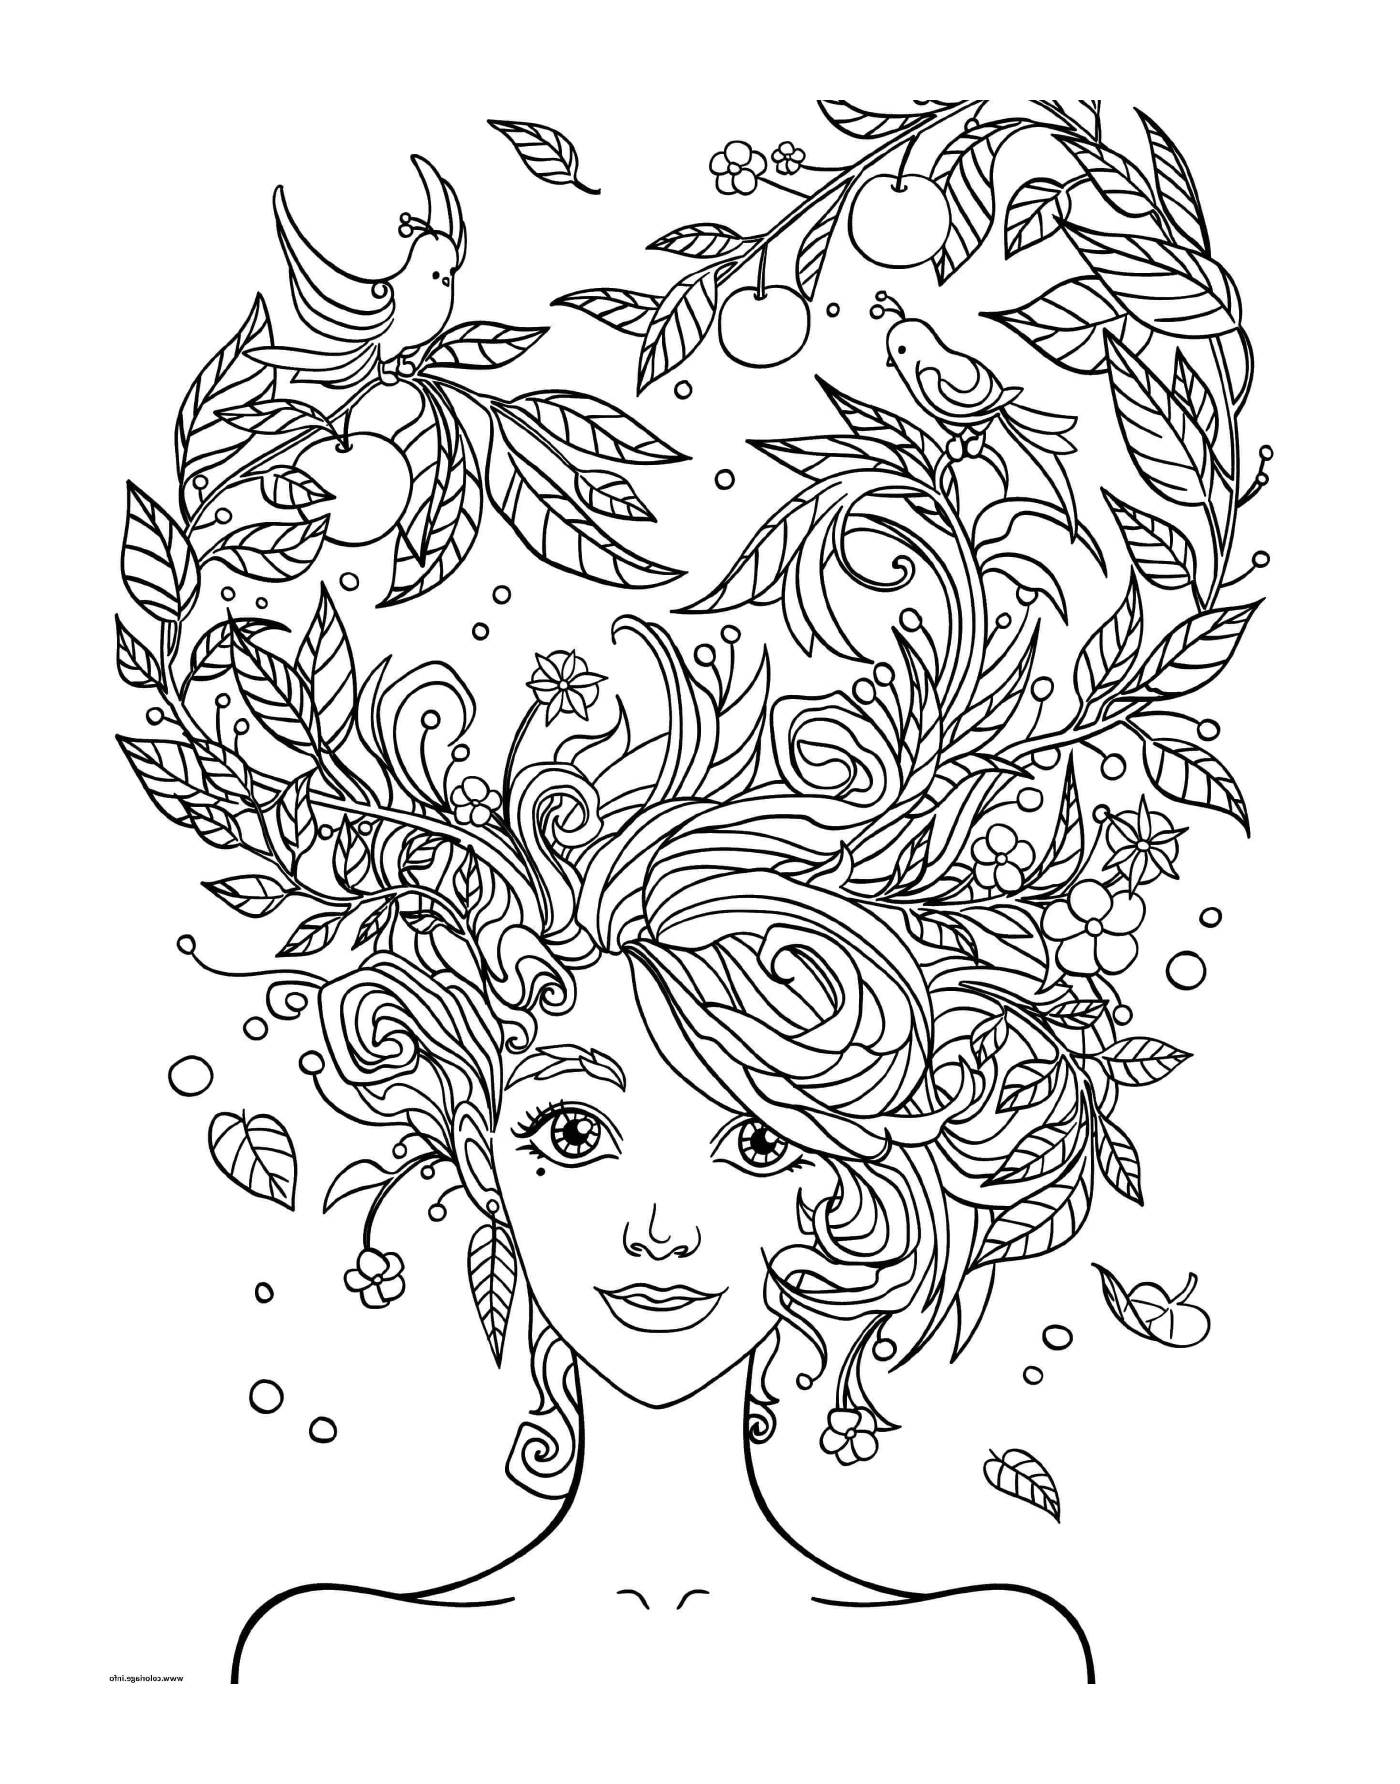  Kopf der erwachsenen Frau mit Blumen im Haar 